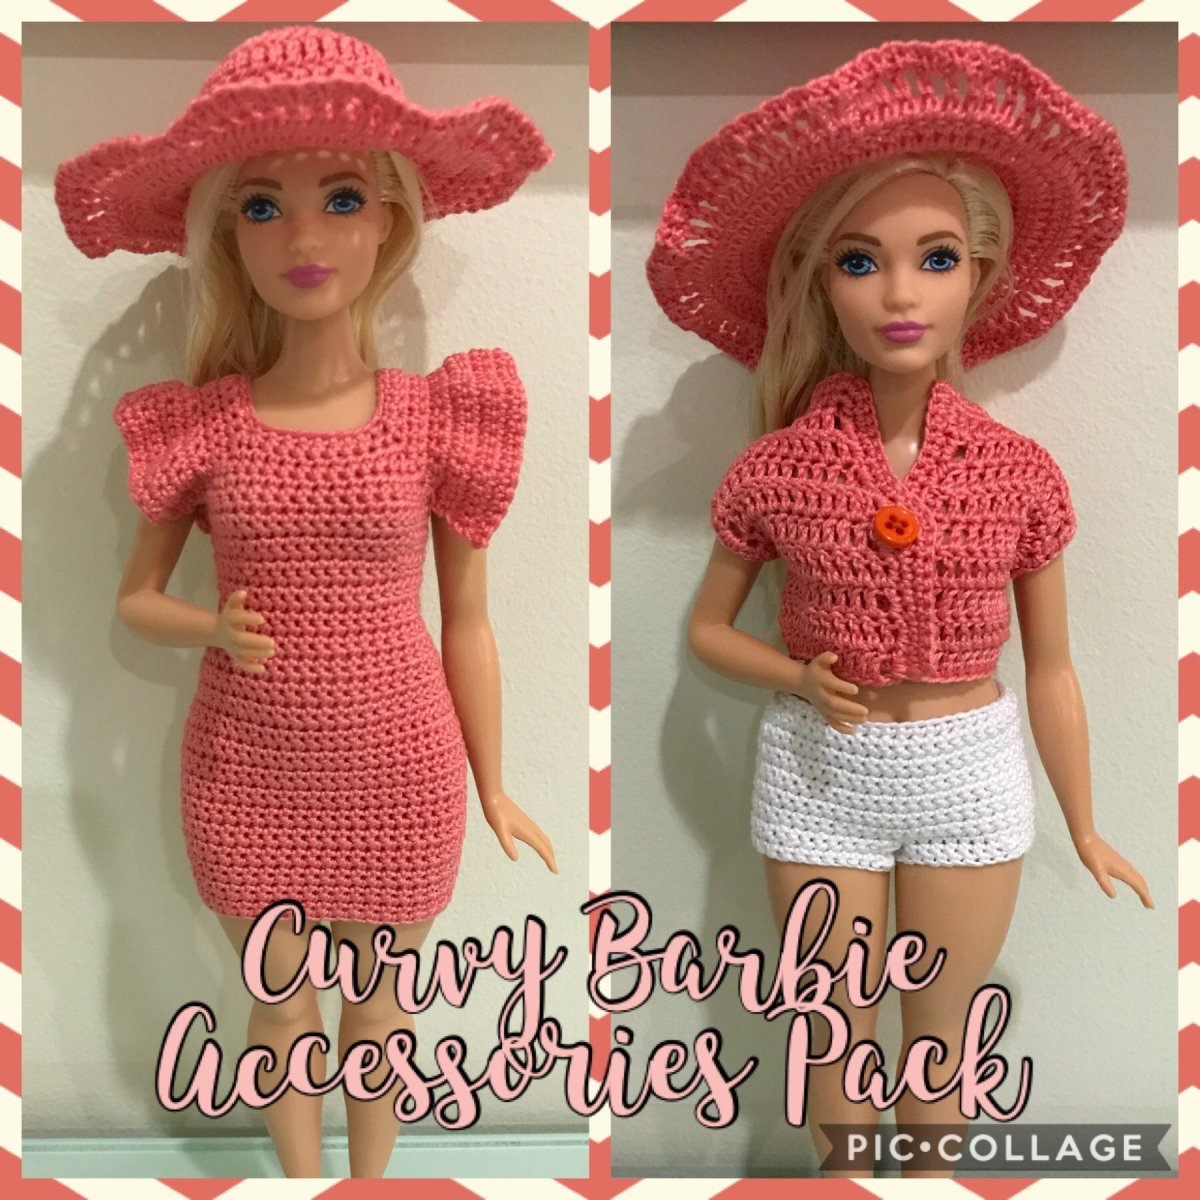 Curvy Barbie Accessories Pack